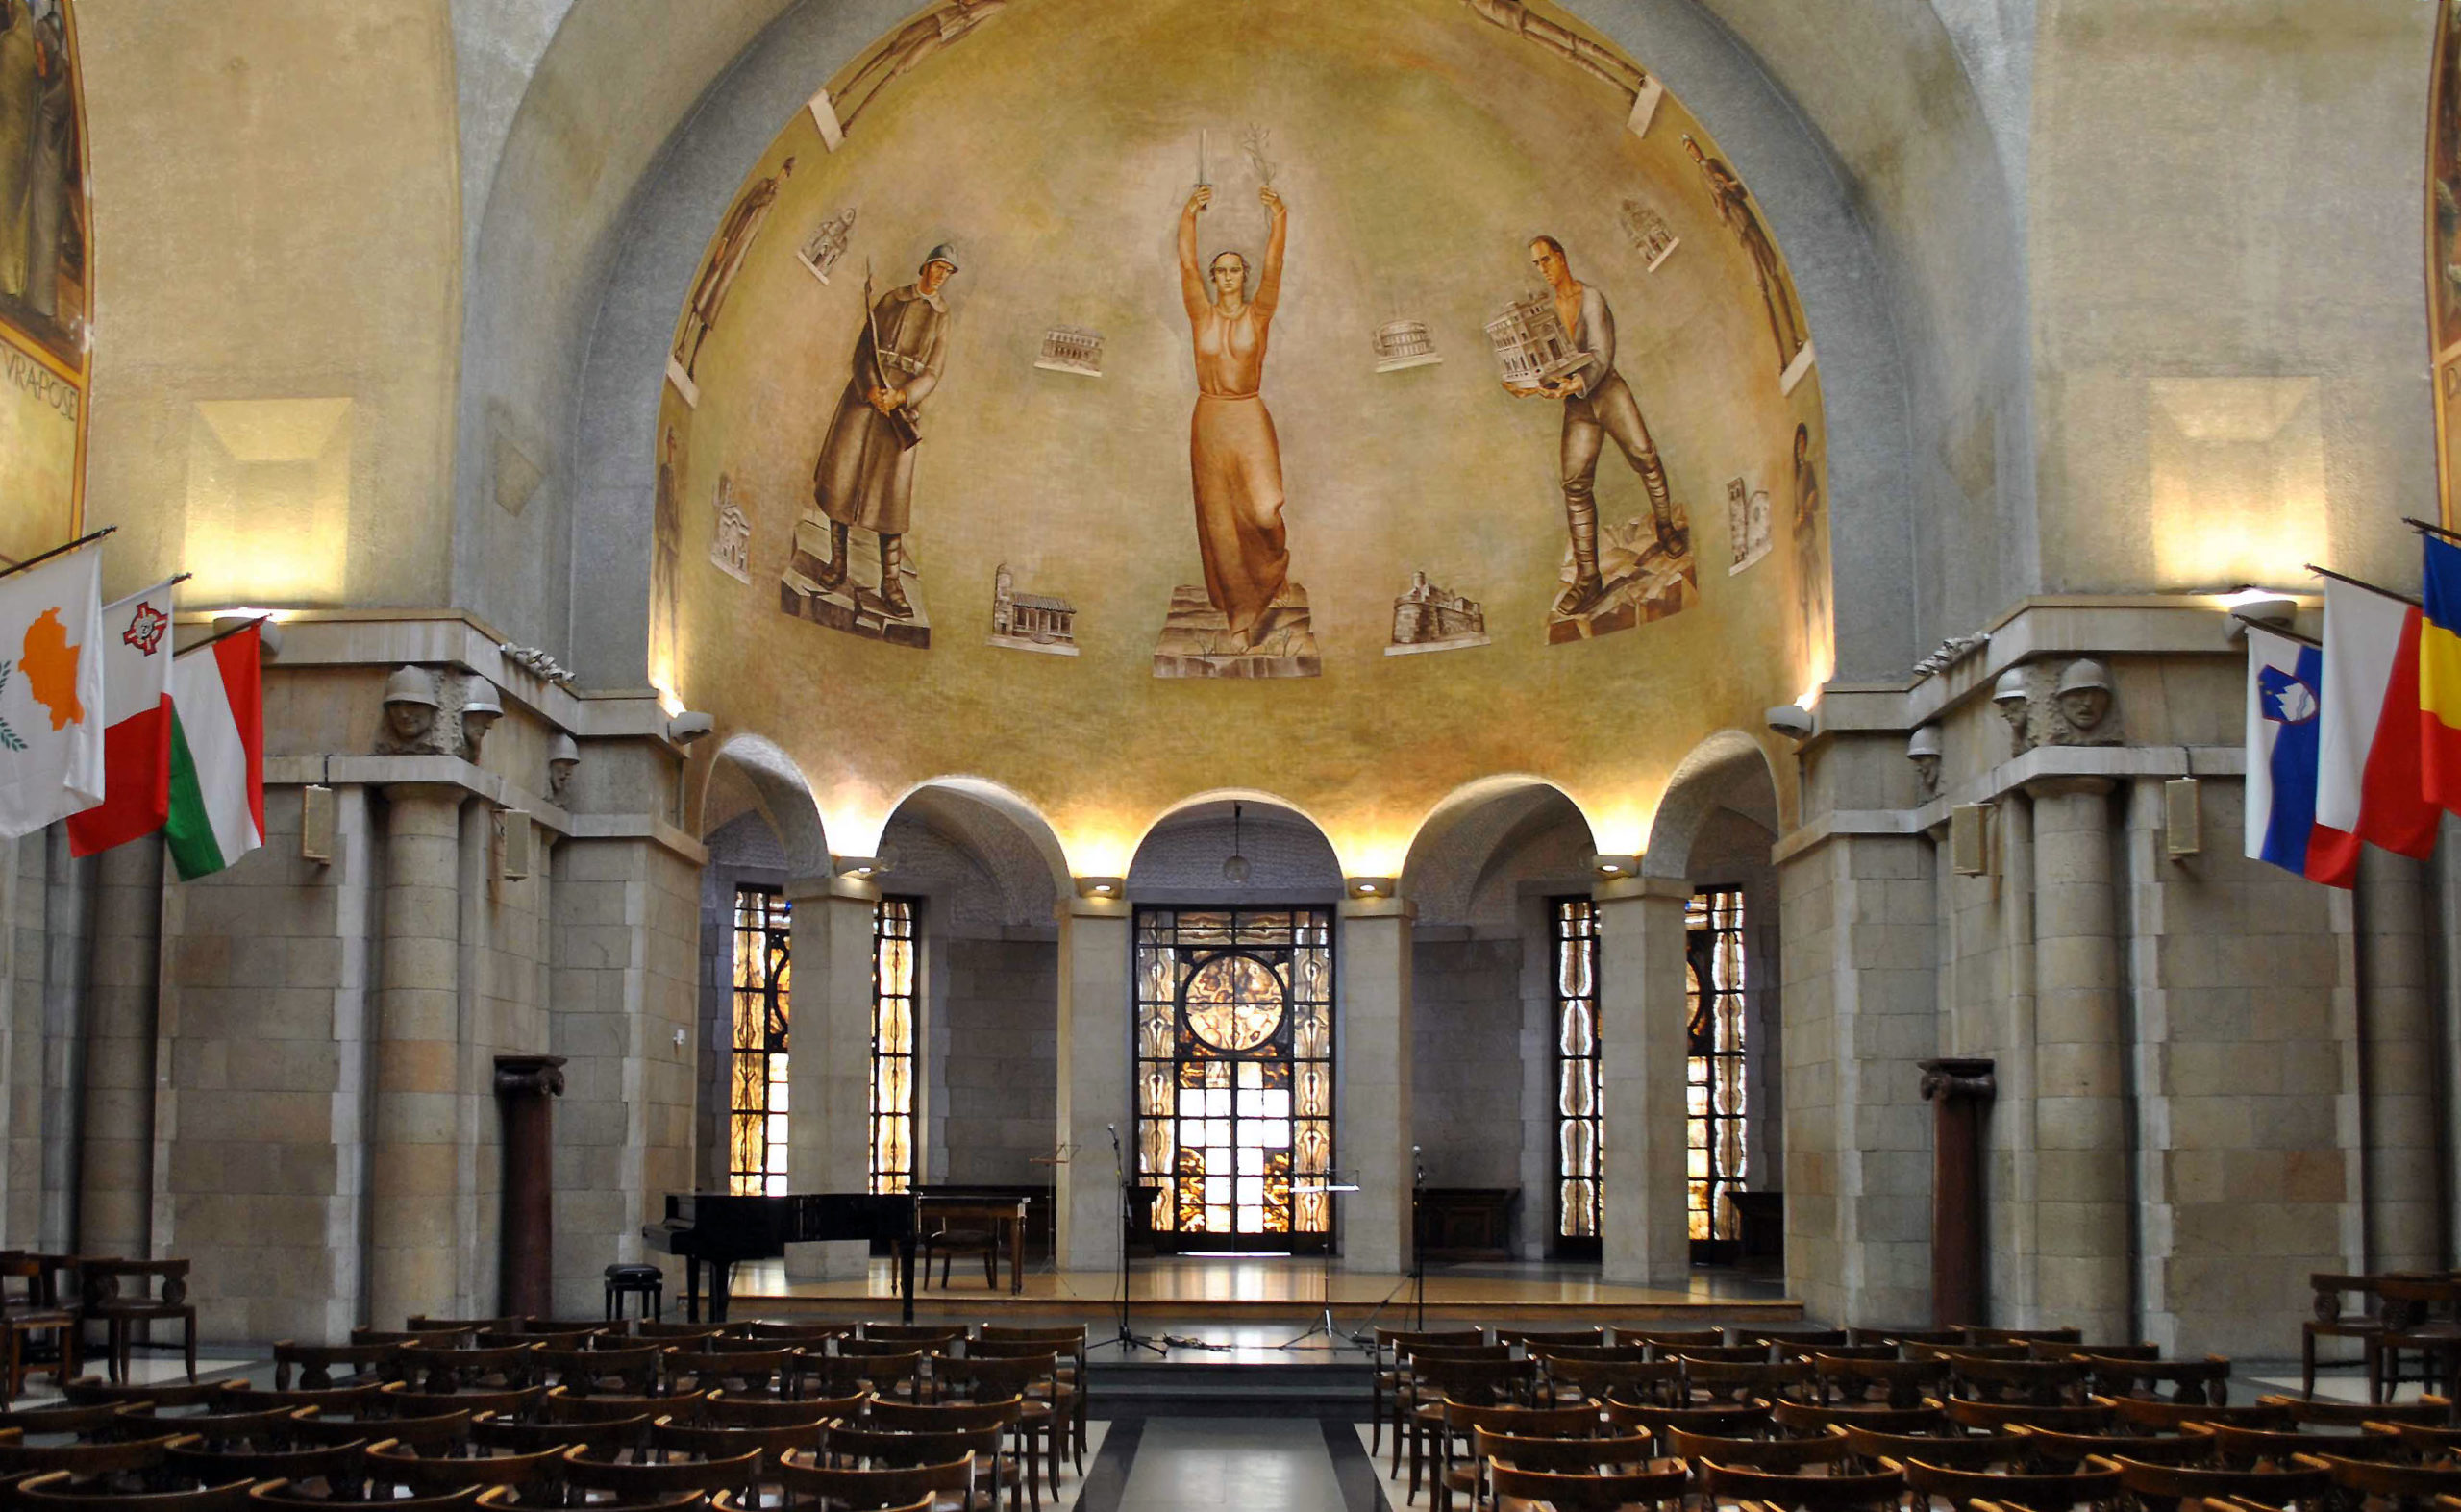 Antonio Giuseppe Santagata, The Offer of the Casa Madre to Victory, 1932, fresco (Assembly Hall, Casa Madre Dell'Associazione Nazionale dei Mutilati e Invalidi di Guerra)